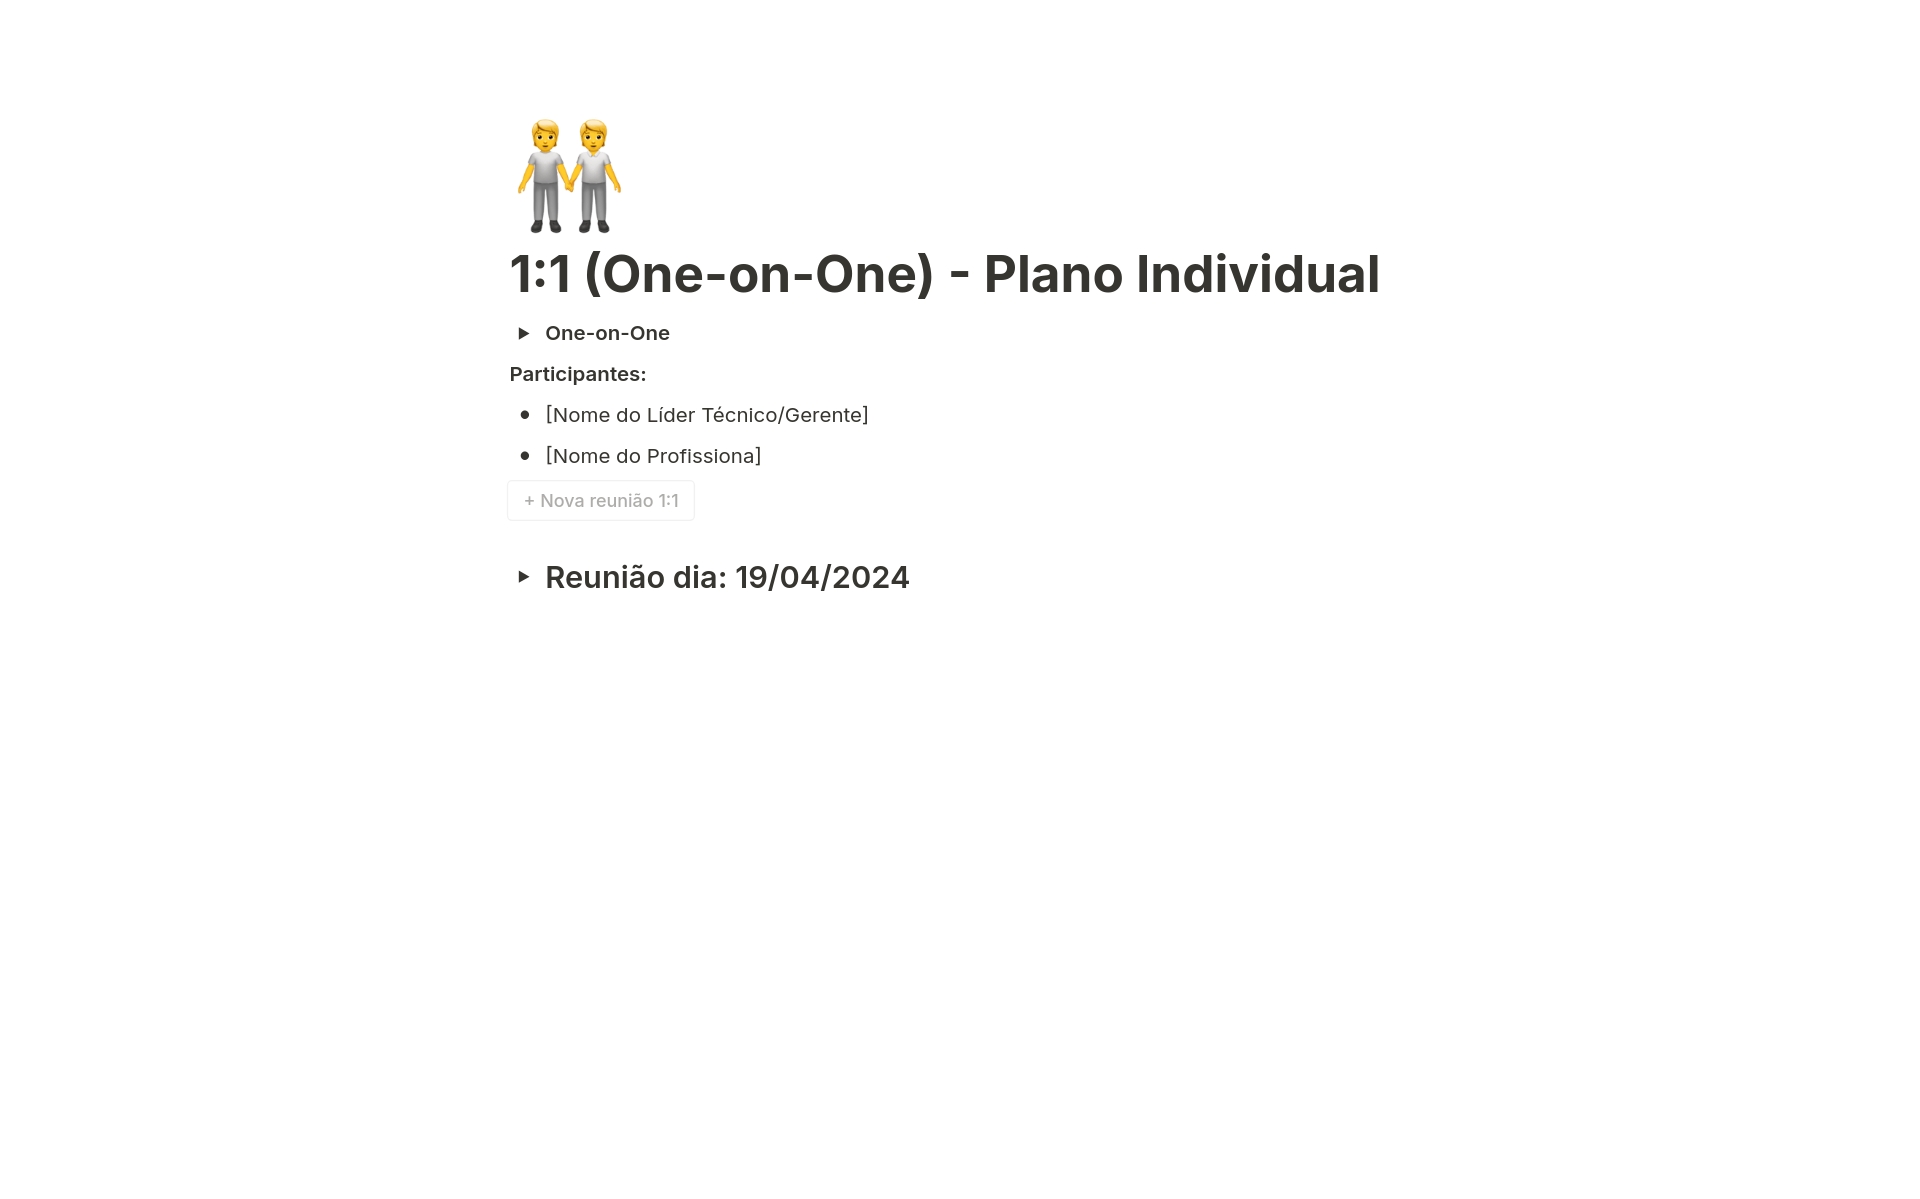 Uma prévia do modelo para 1:1 (One-on-One) - Plano Individual